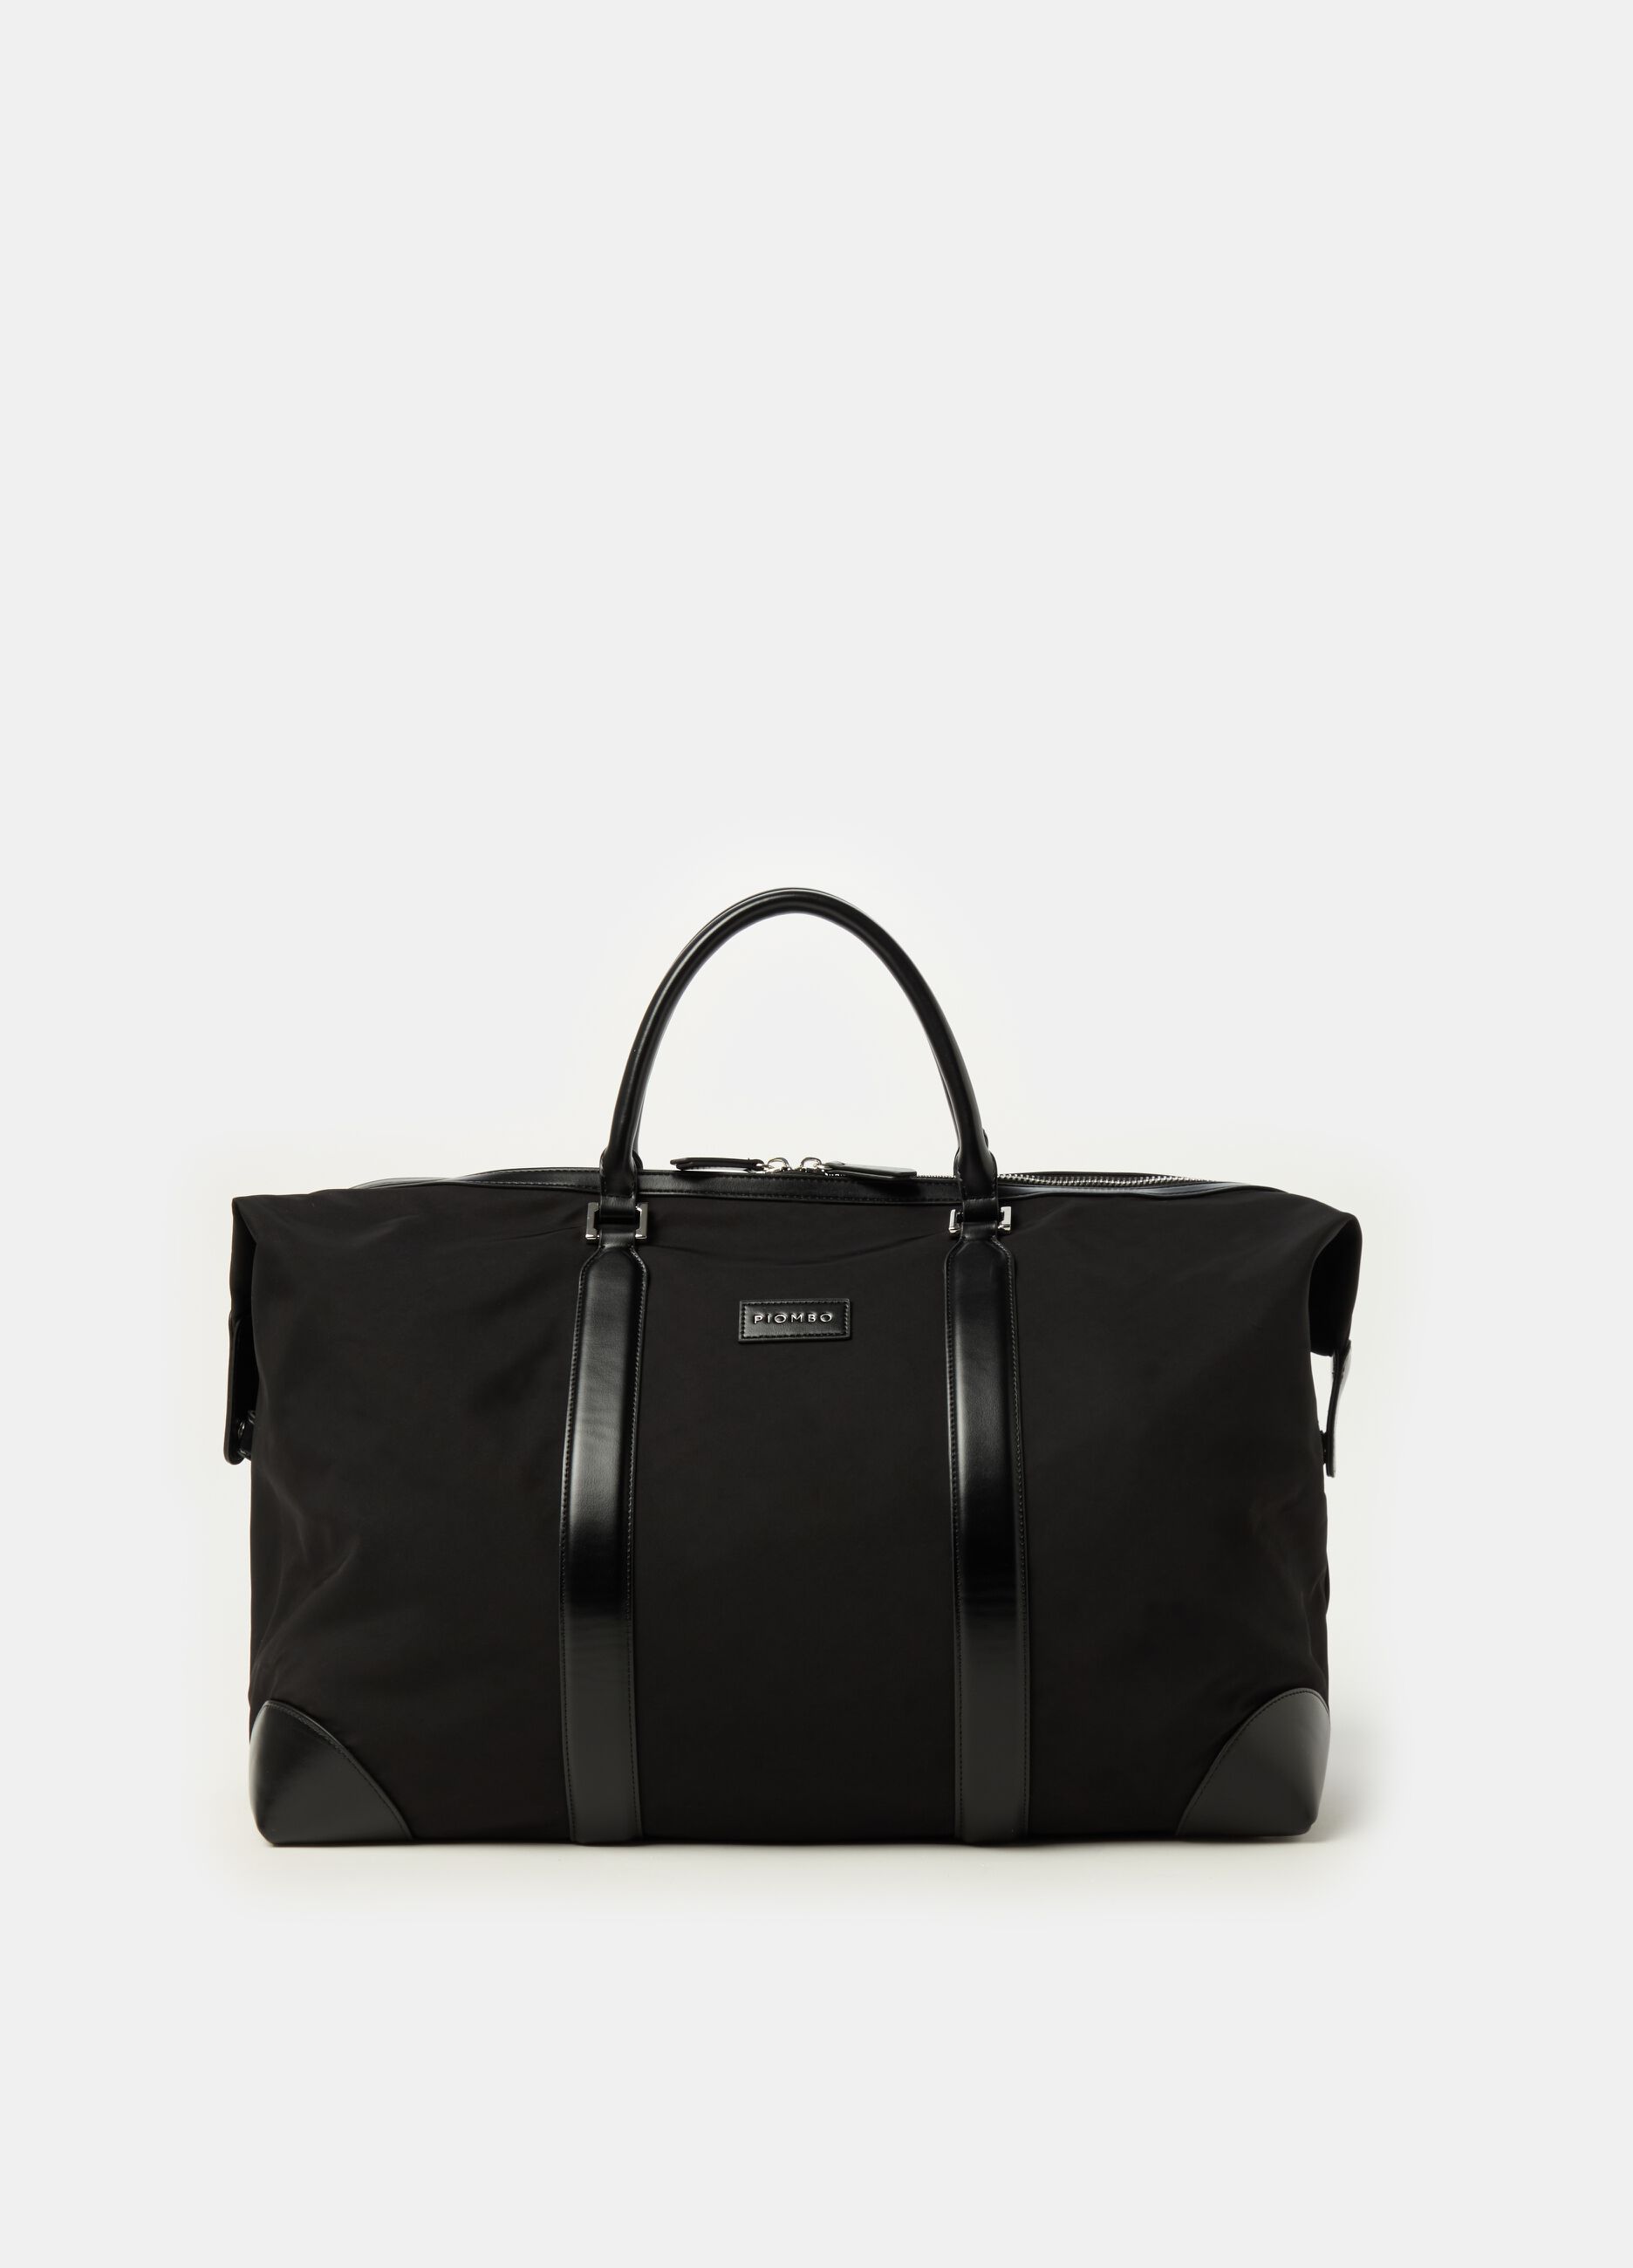 Contemporary bag